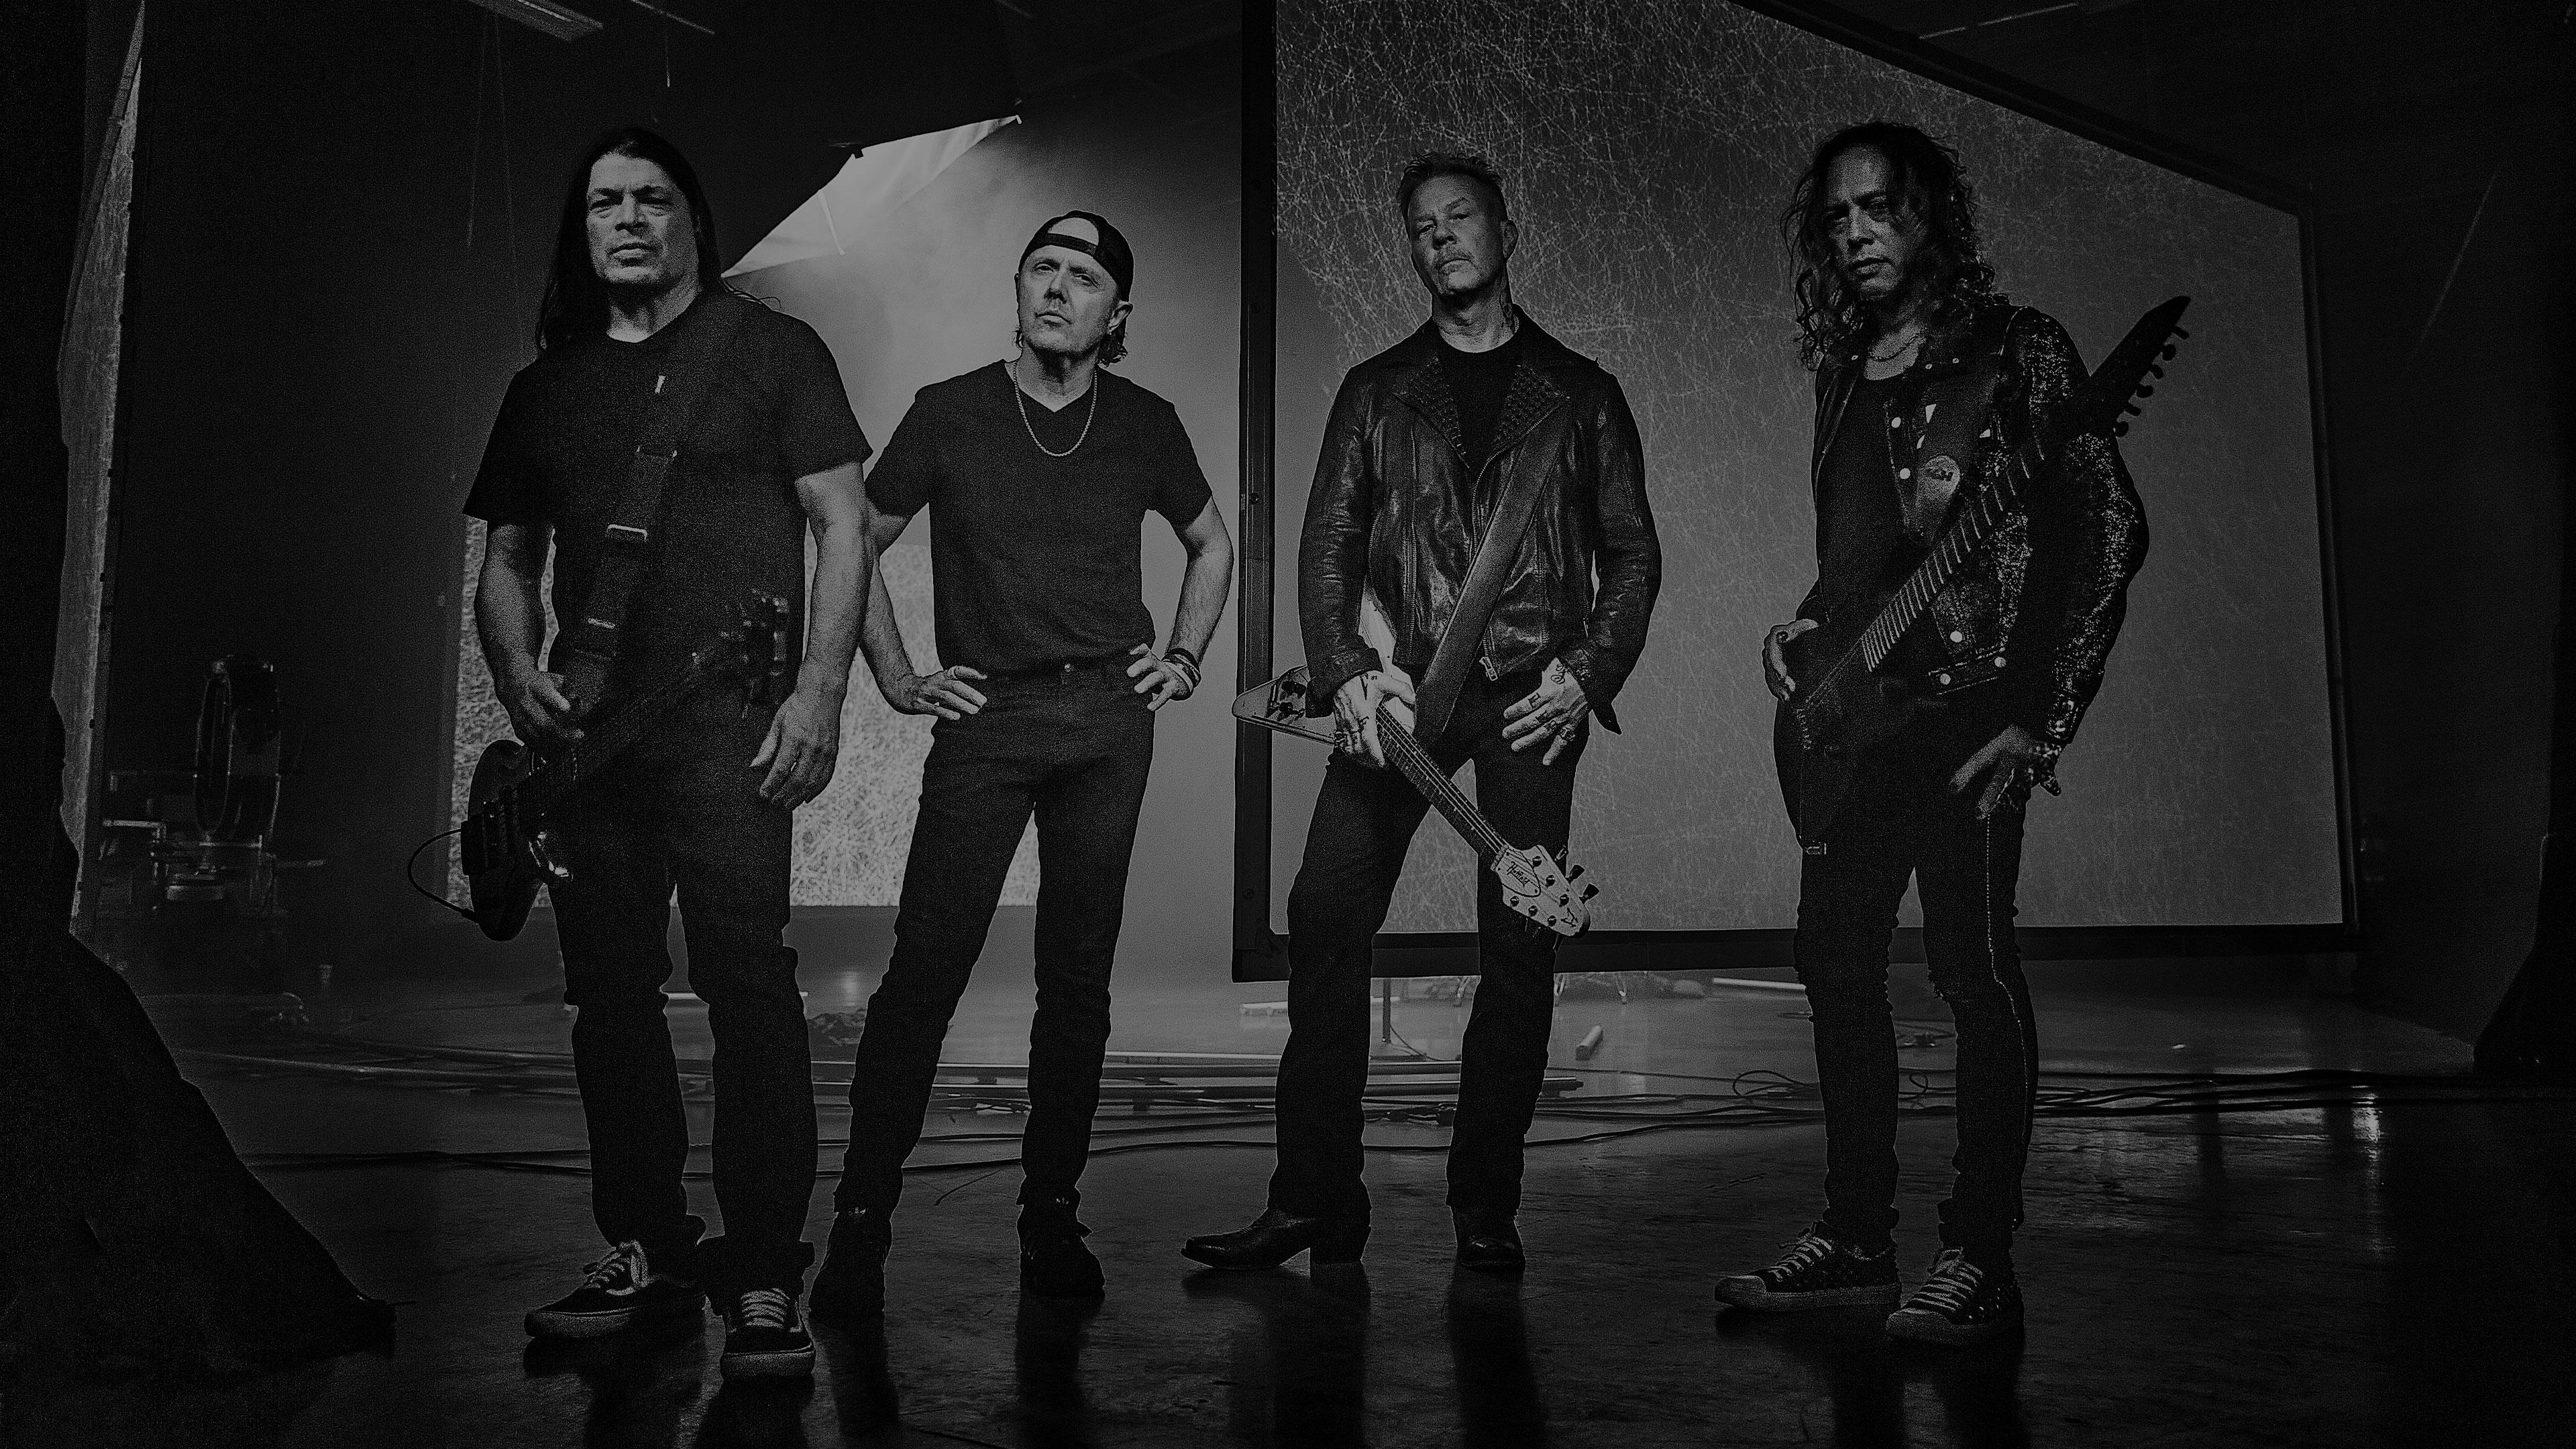 Mandatory Metallica Returns to SiriusXM